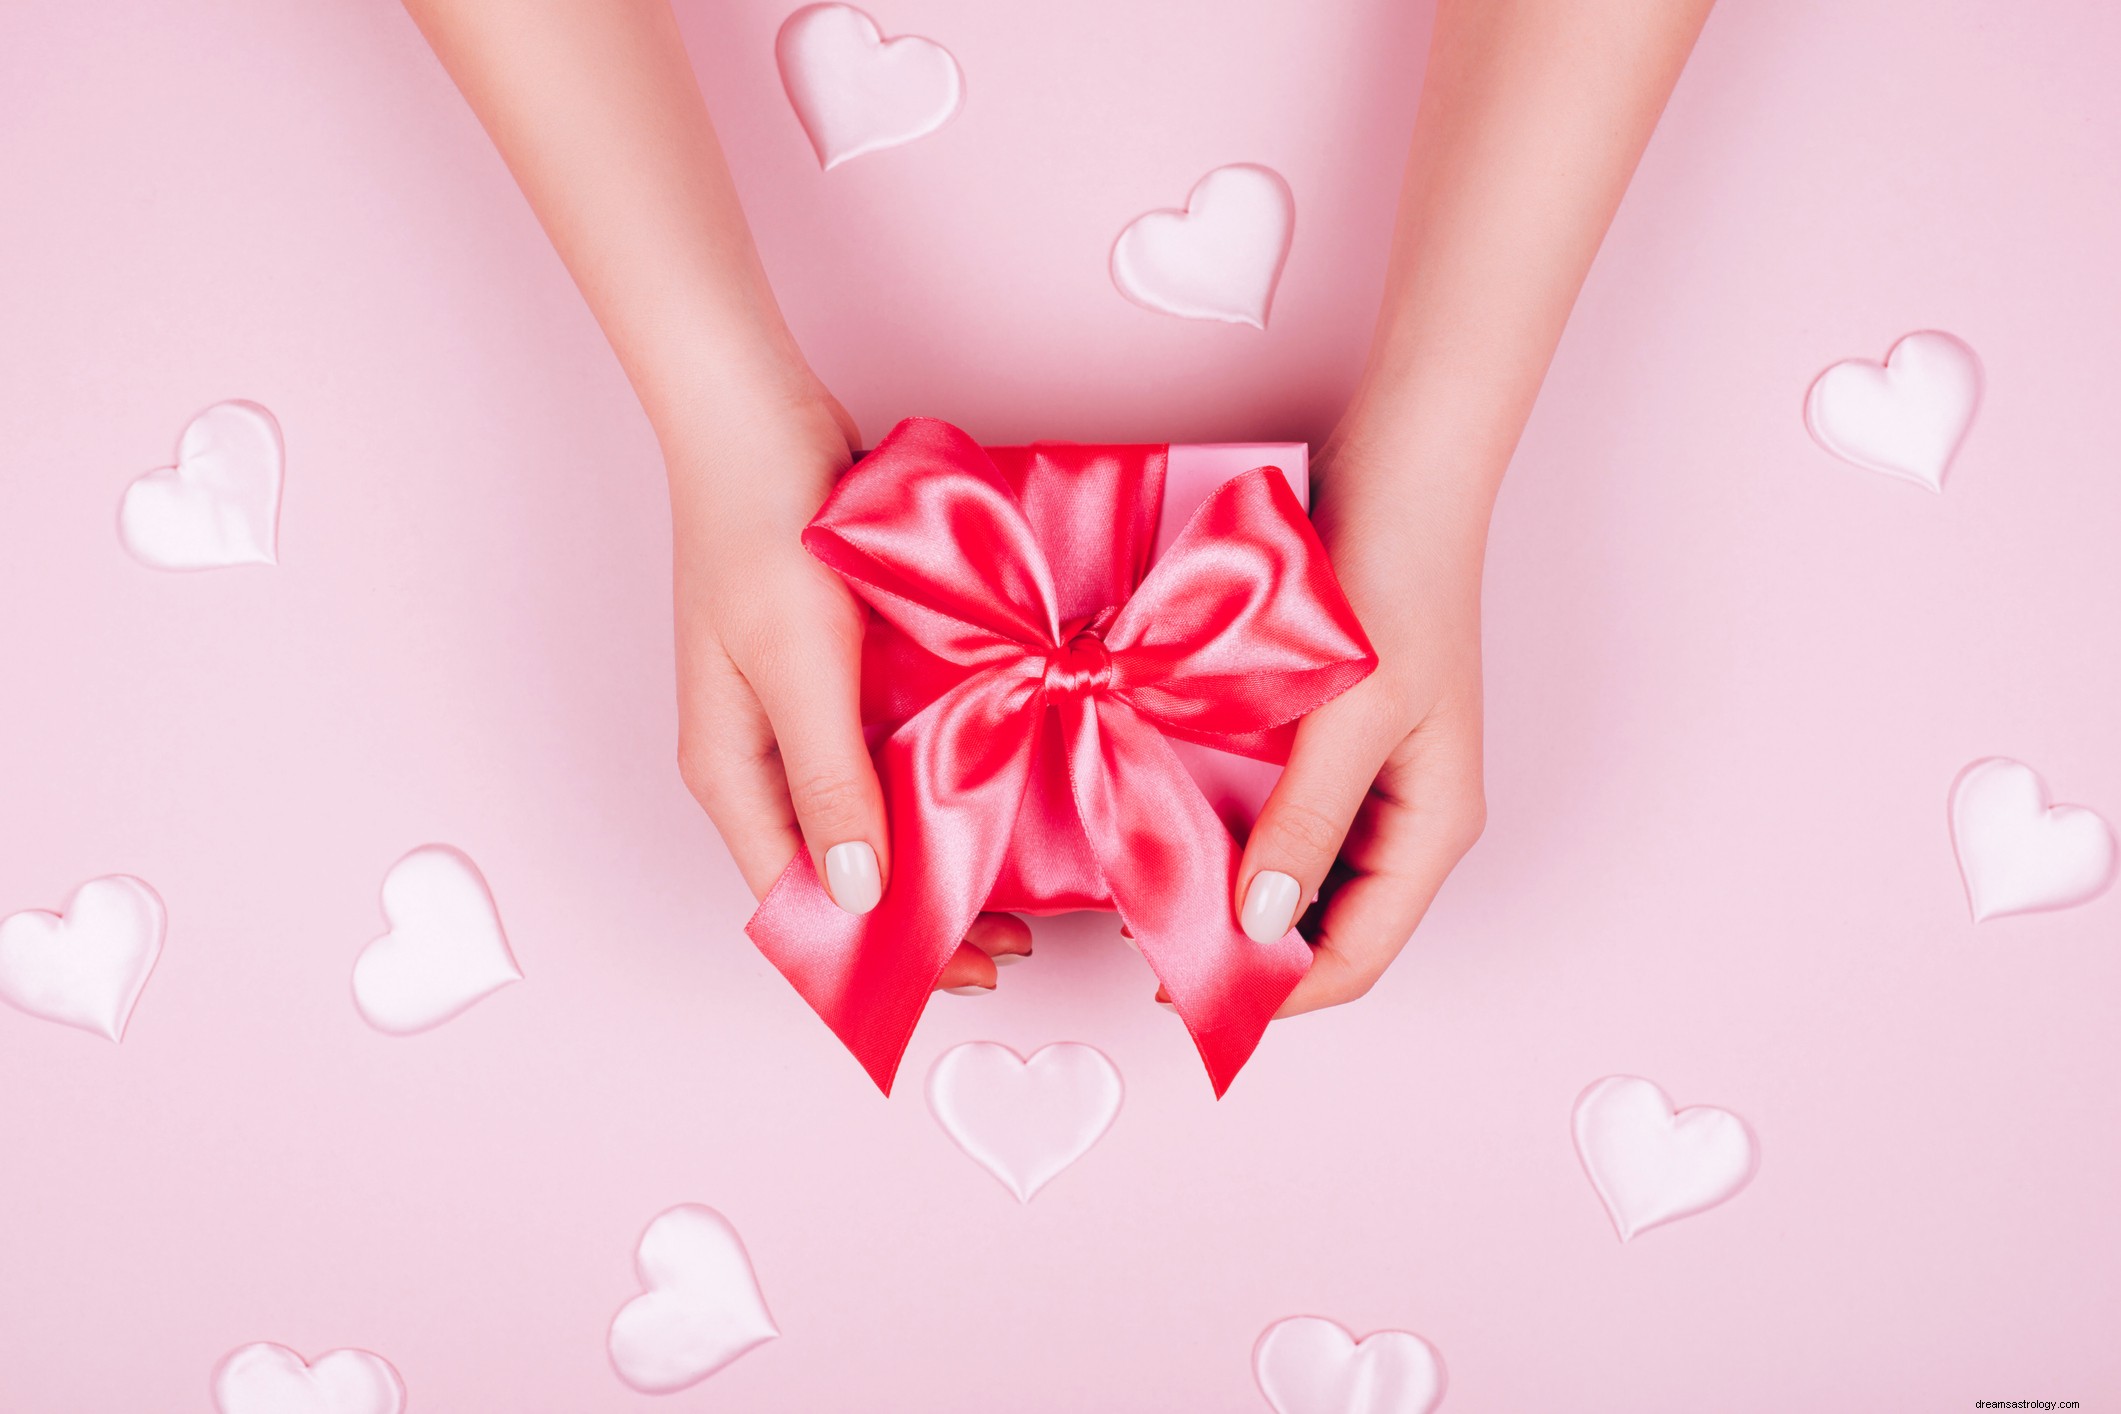 Speciale San Valentino:scopri come al tuo partner piace essere coccolato in base al suo segno zodiacale 